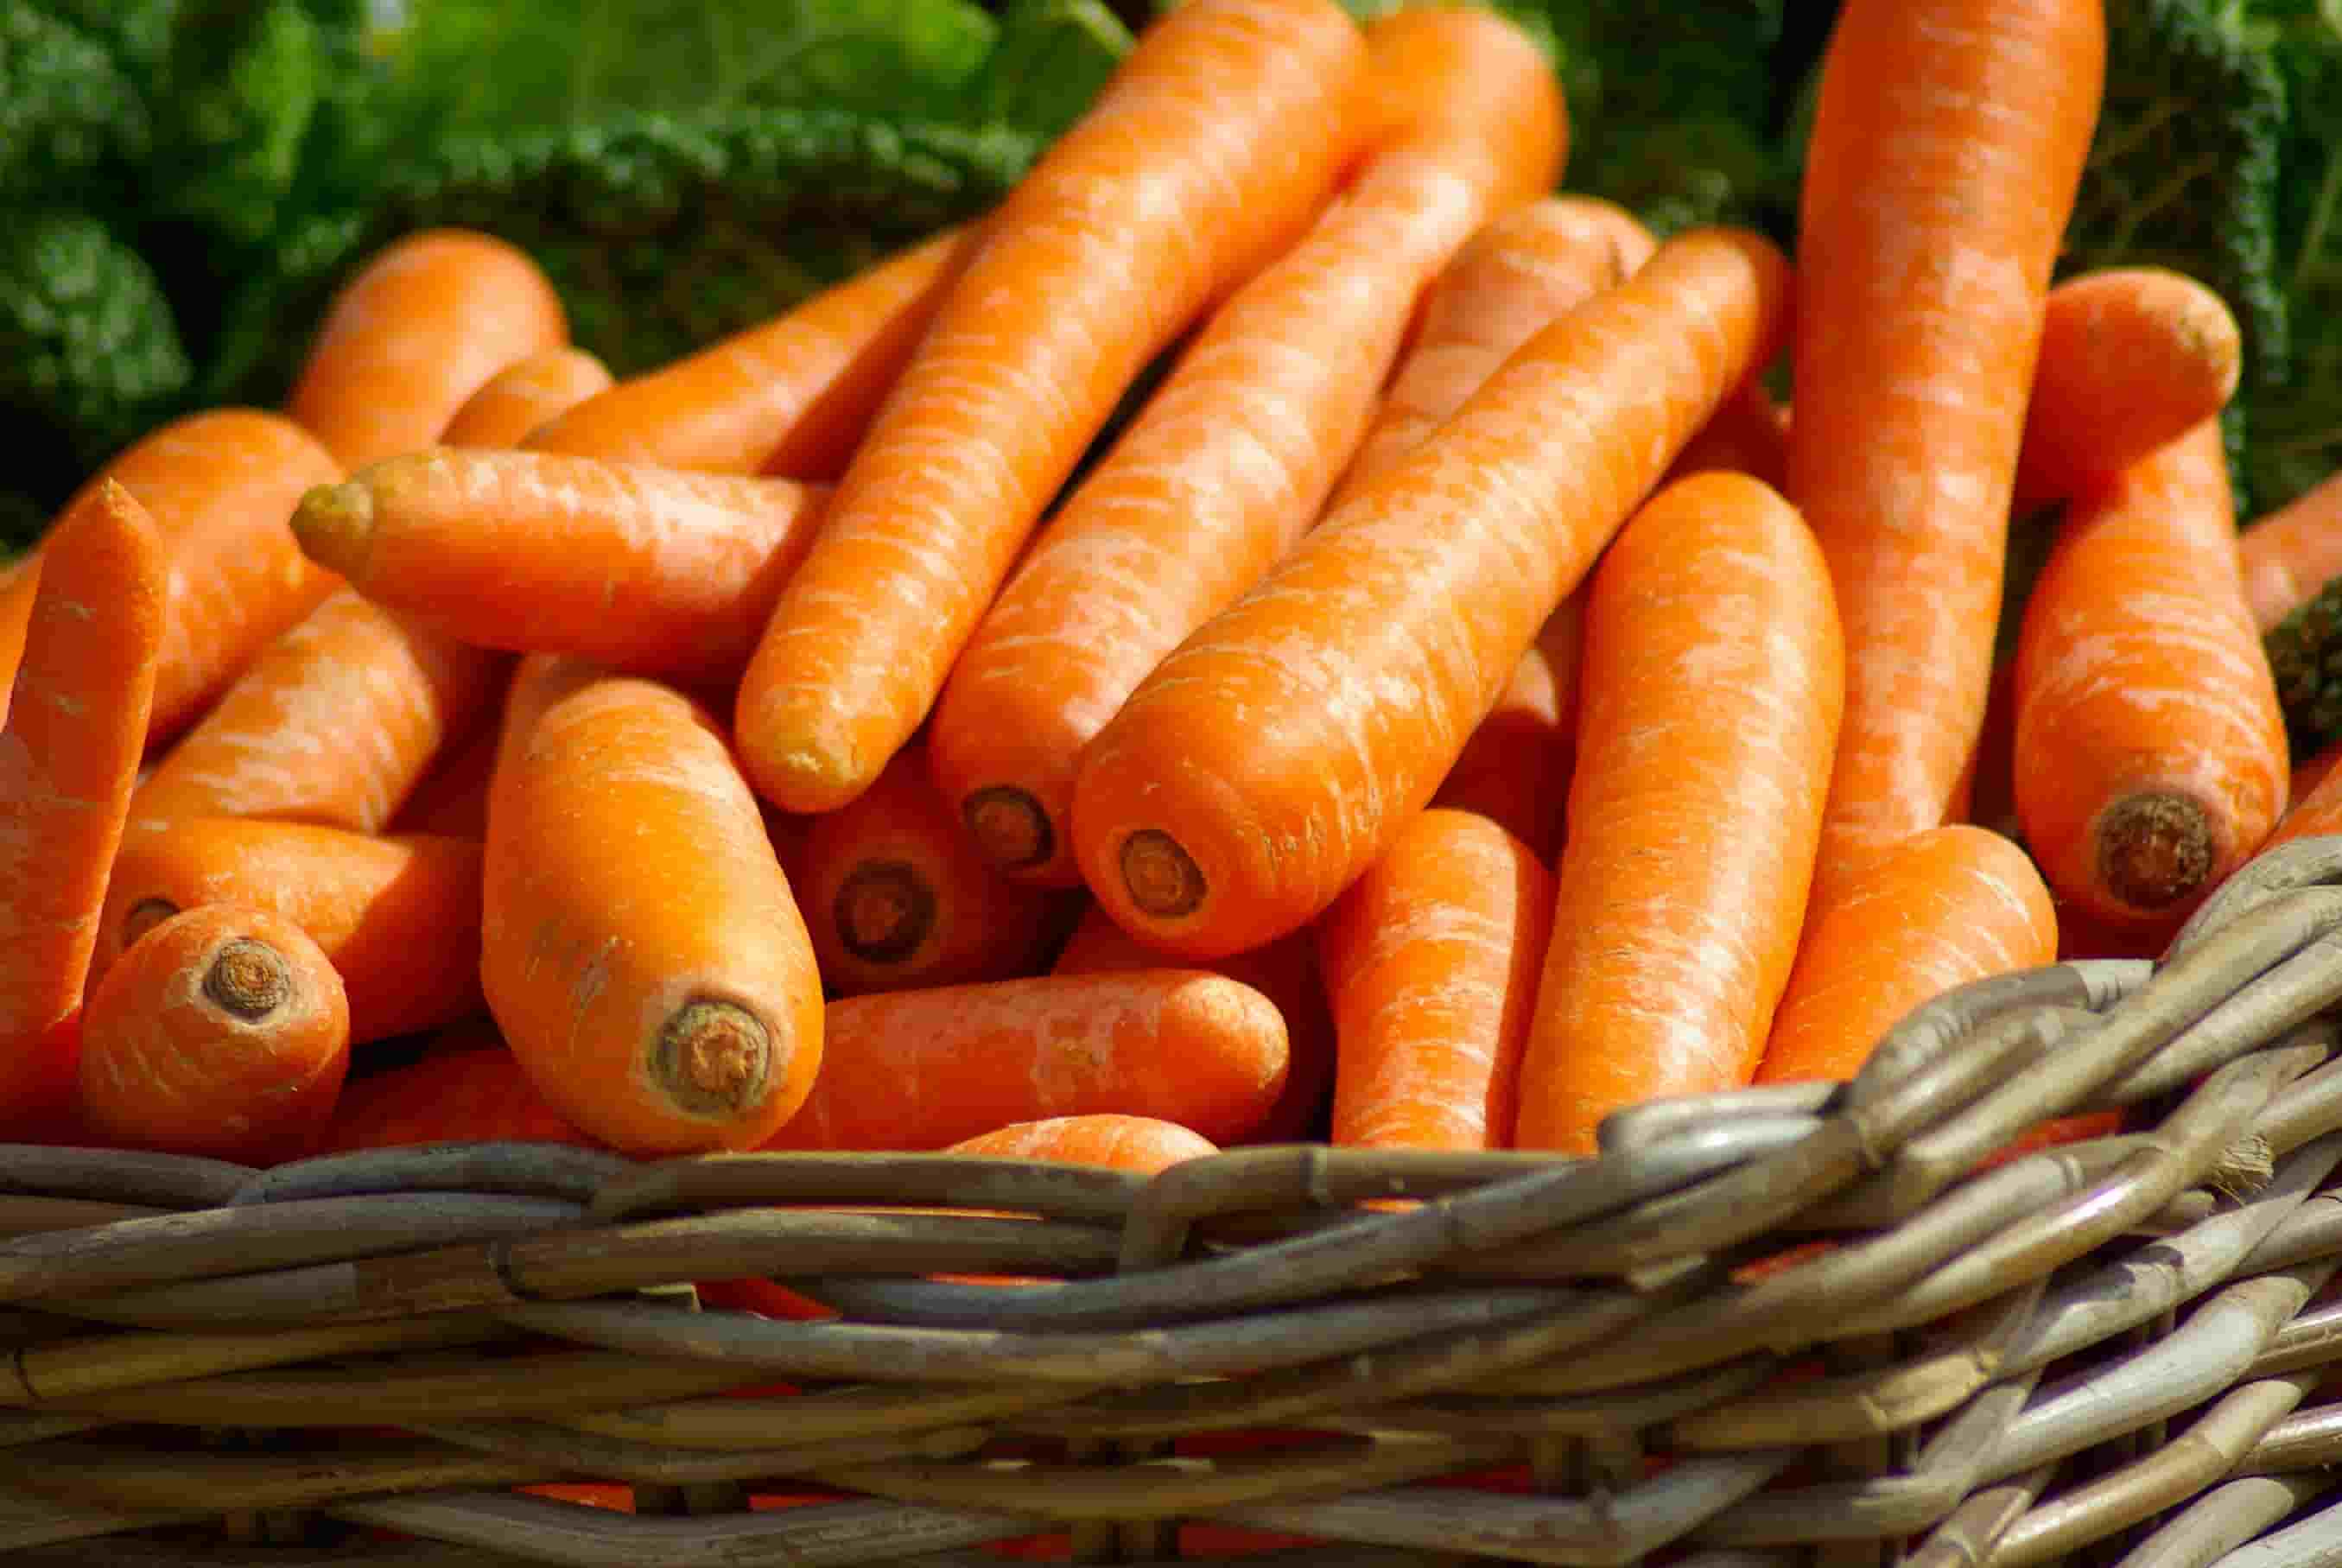 carrots-basket-vegetables-market-37641 (2)